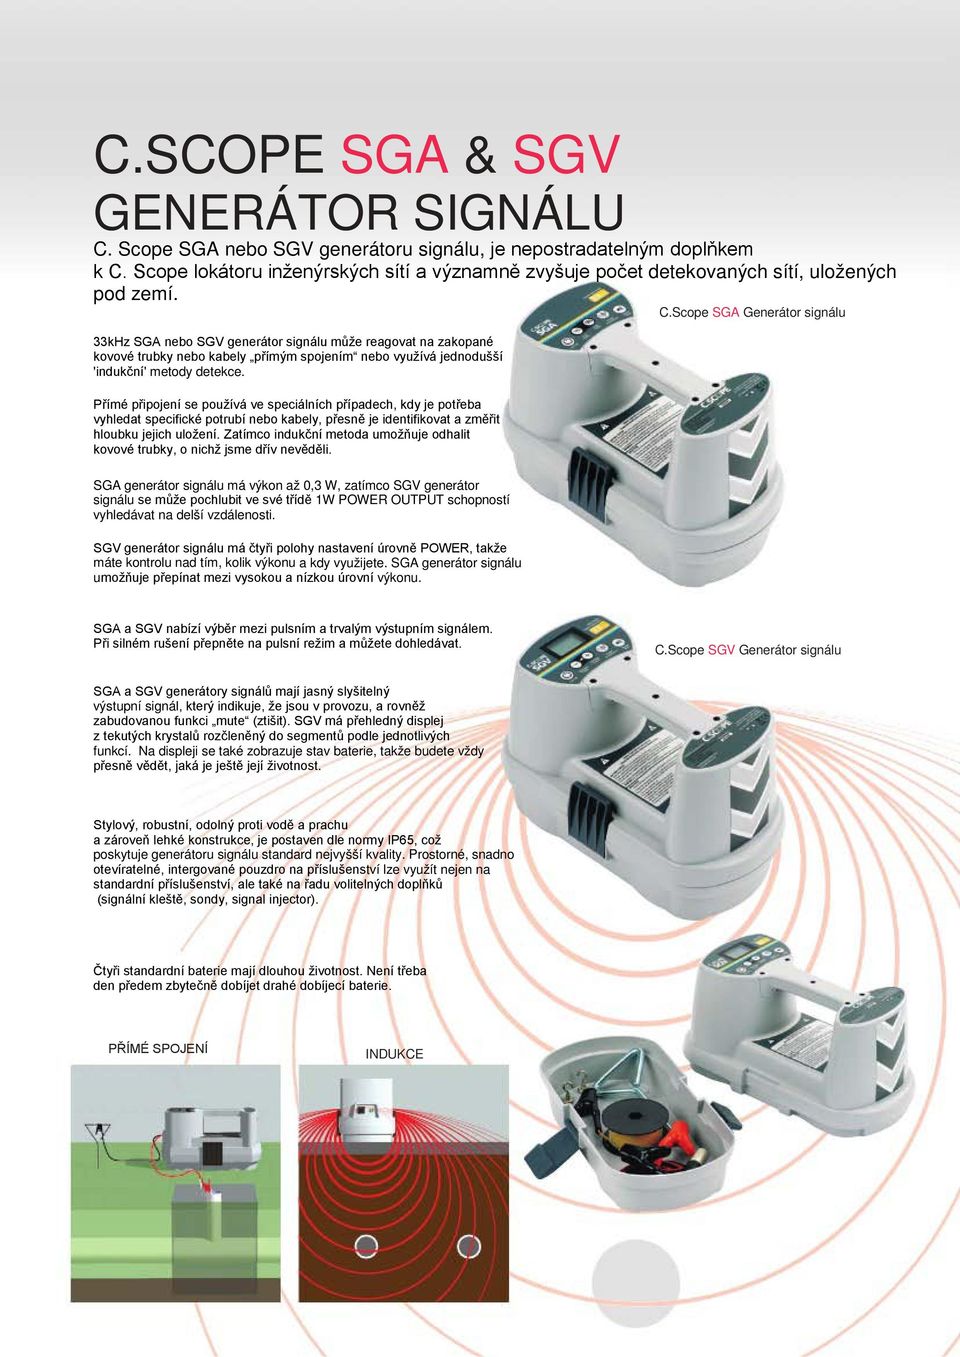 Scope SGA Generátor signálu 33kHz SGA nebo SGV generátor signálu může reagovat na zakopané kovové trubky nebo kabely přímým spojením nebo využívá jednodušší 'indukční' metody detekce.